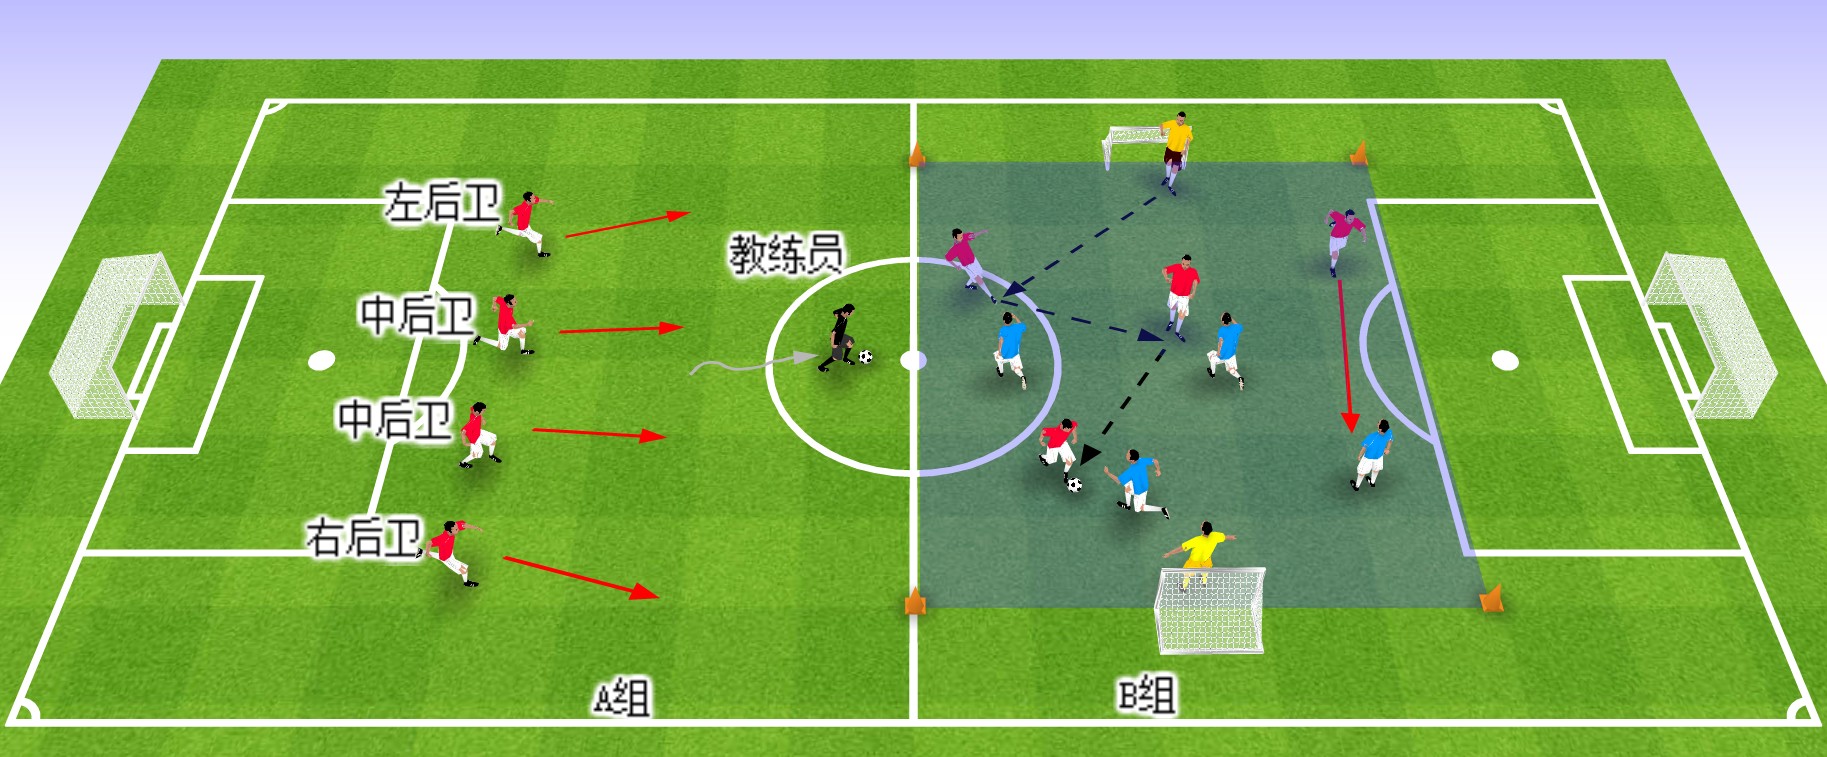 足球教案 | 意大利足球青训:简单实用的攻防技术